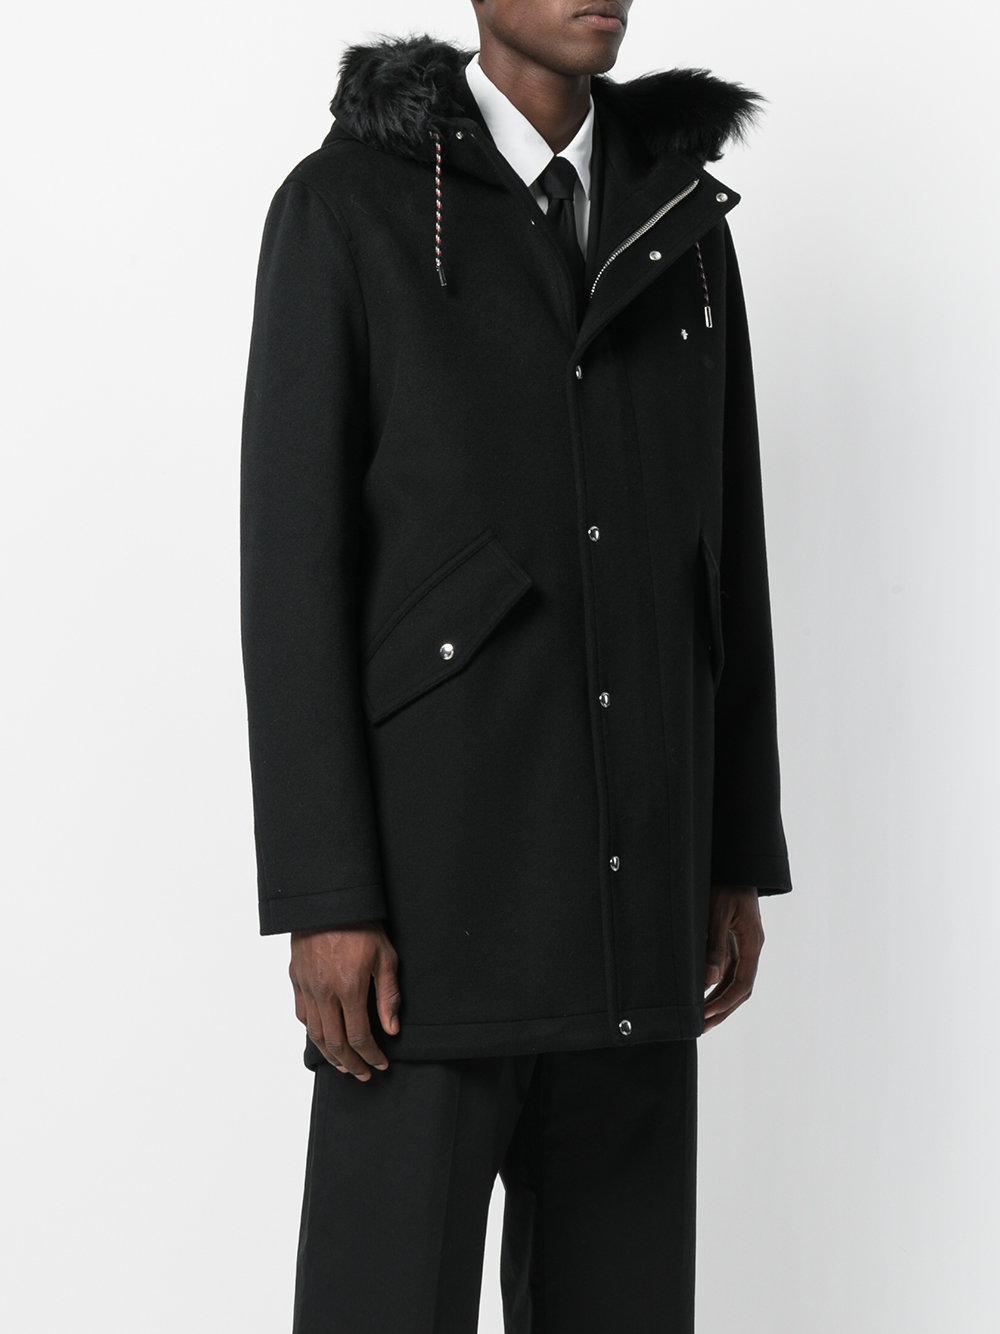 Dior Homme Fur Oversized Parka Coat in Black for Men - Lyst